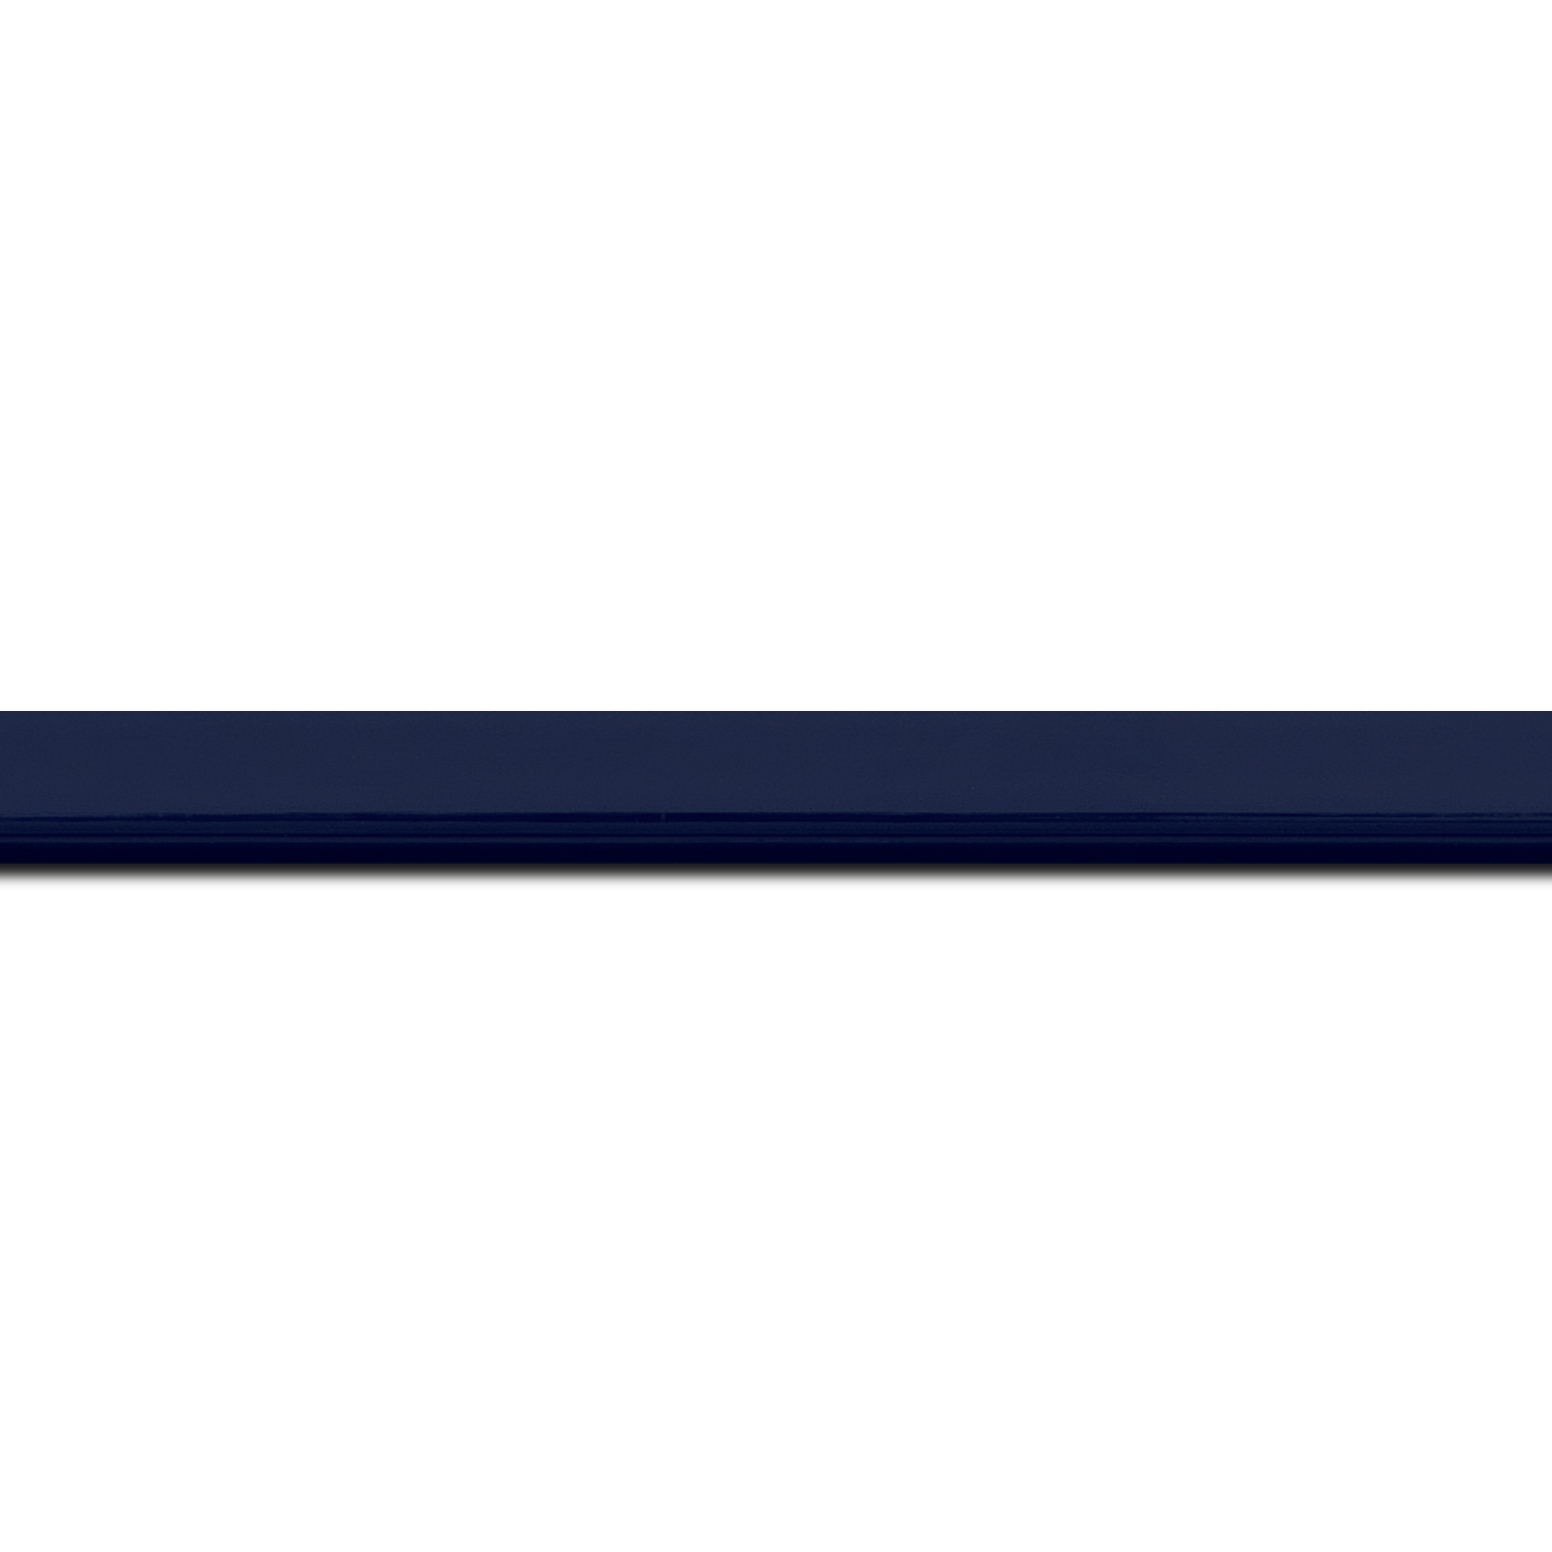 Baguette longueur 1.40m bois profil méplat largeur 1.4cm couleur bleu nuit foncé laqué